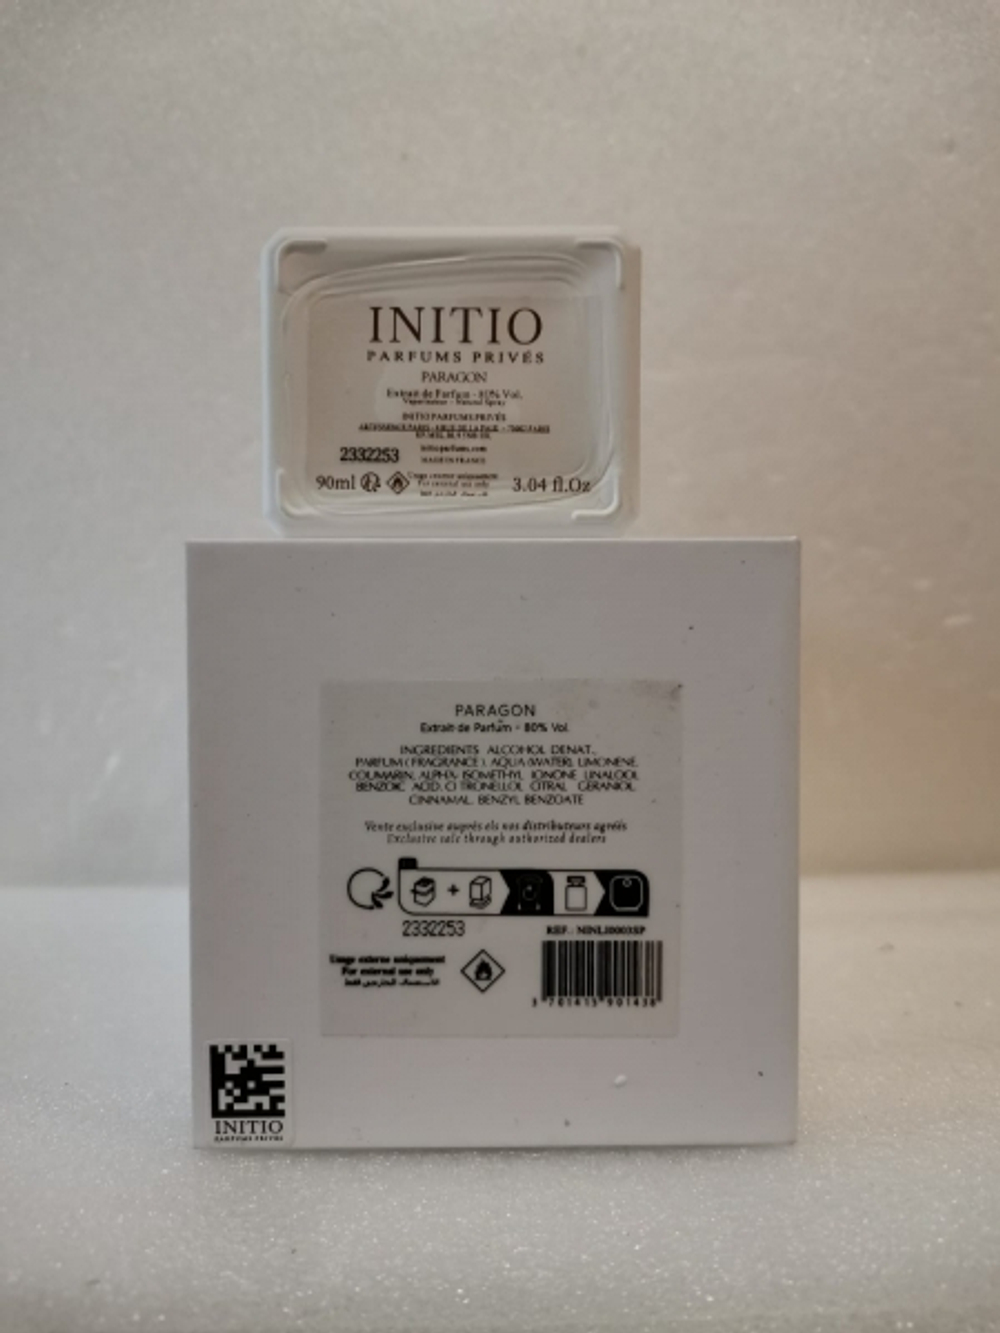 Initio Parfums Paragon 100 ml (duty free парфюмерия)